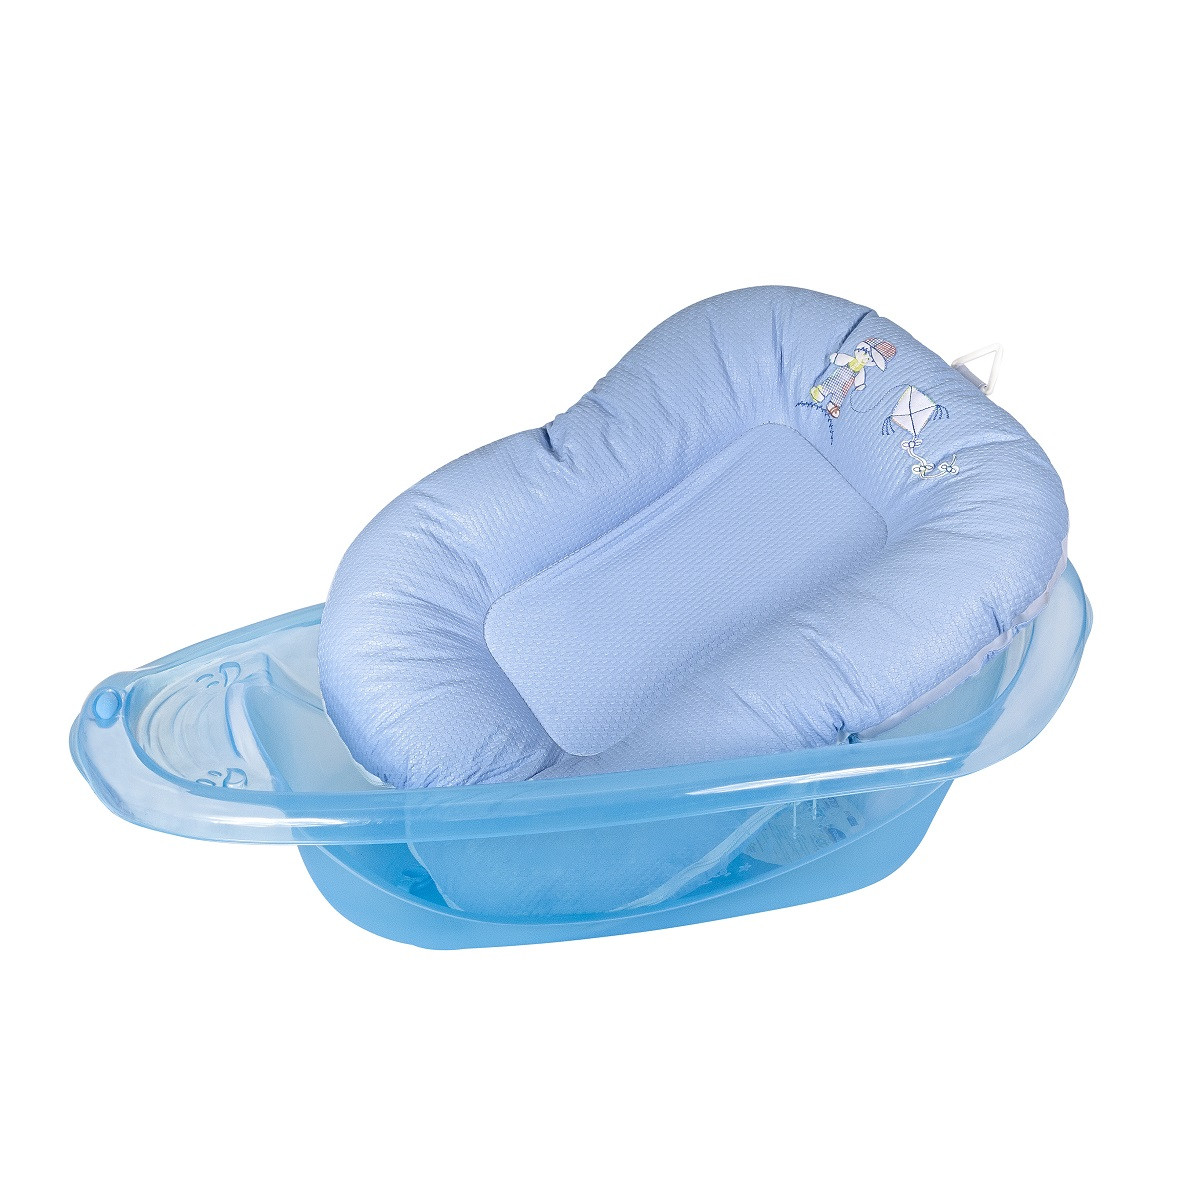 Porta Banho Almofada para Bebê - Azul